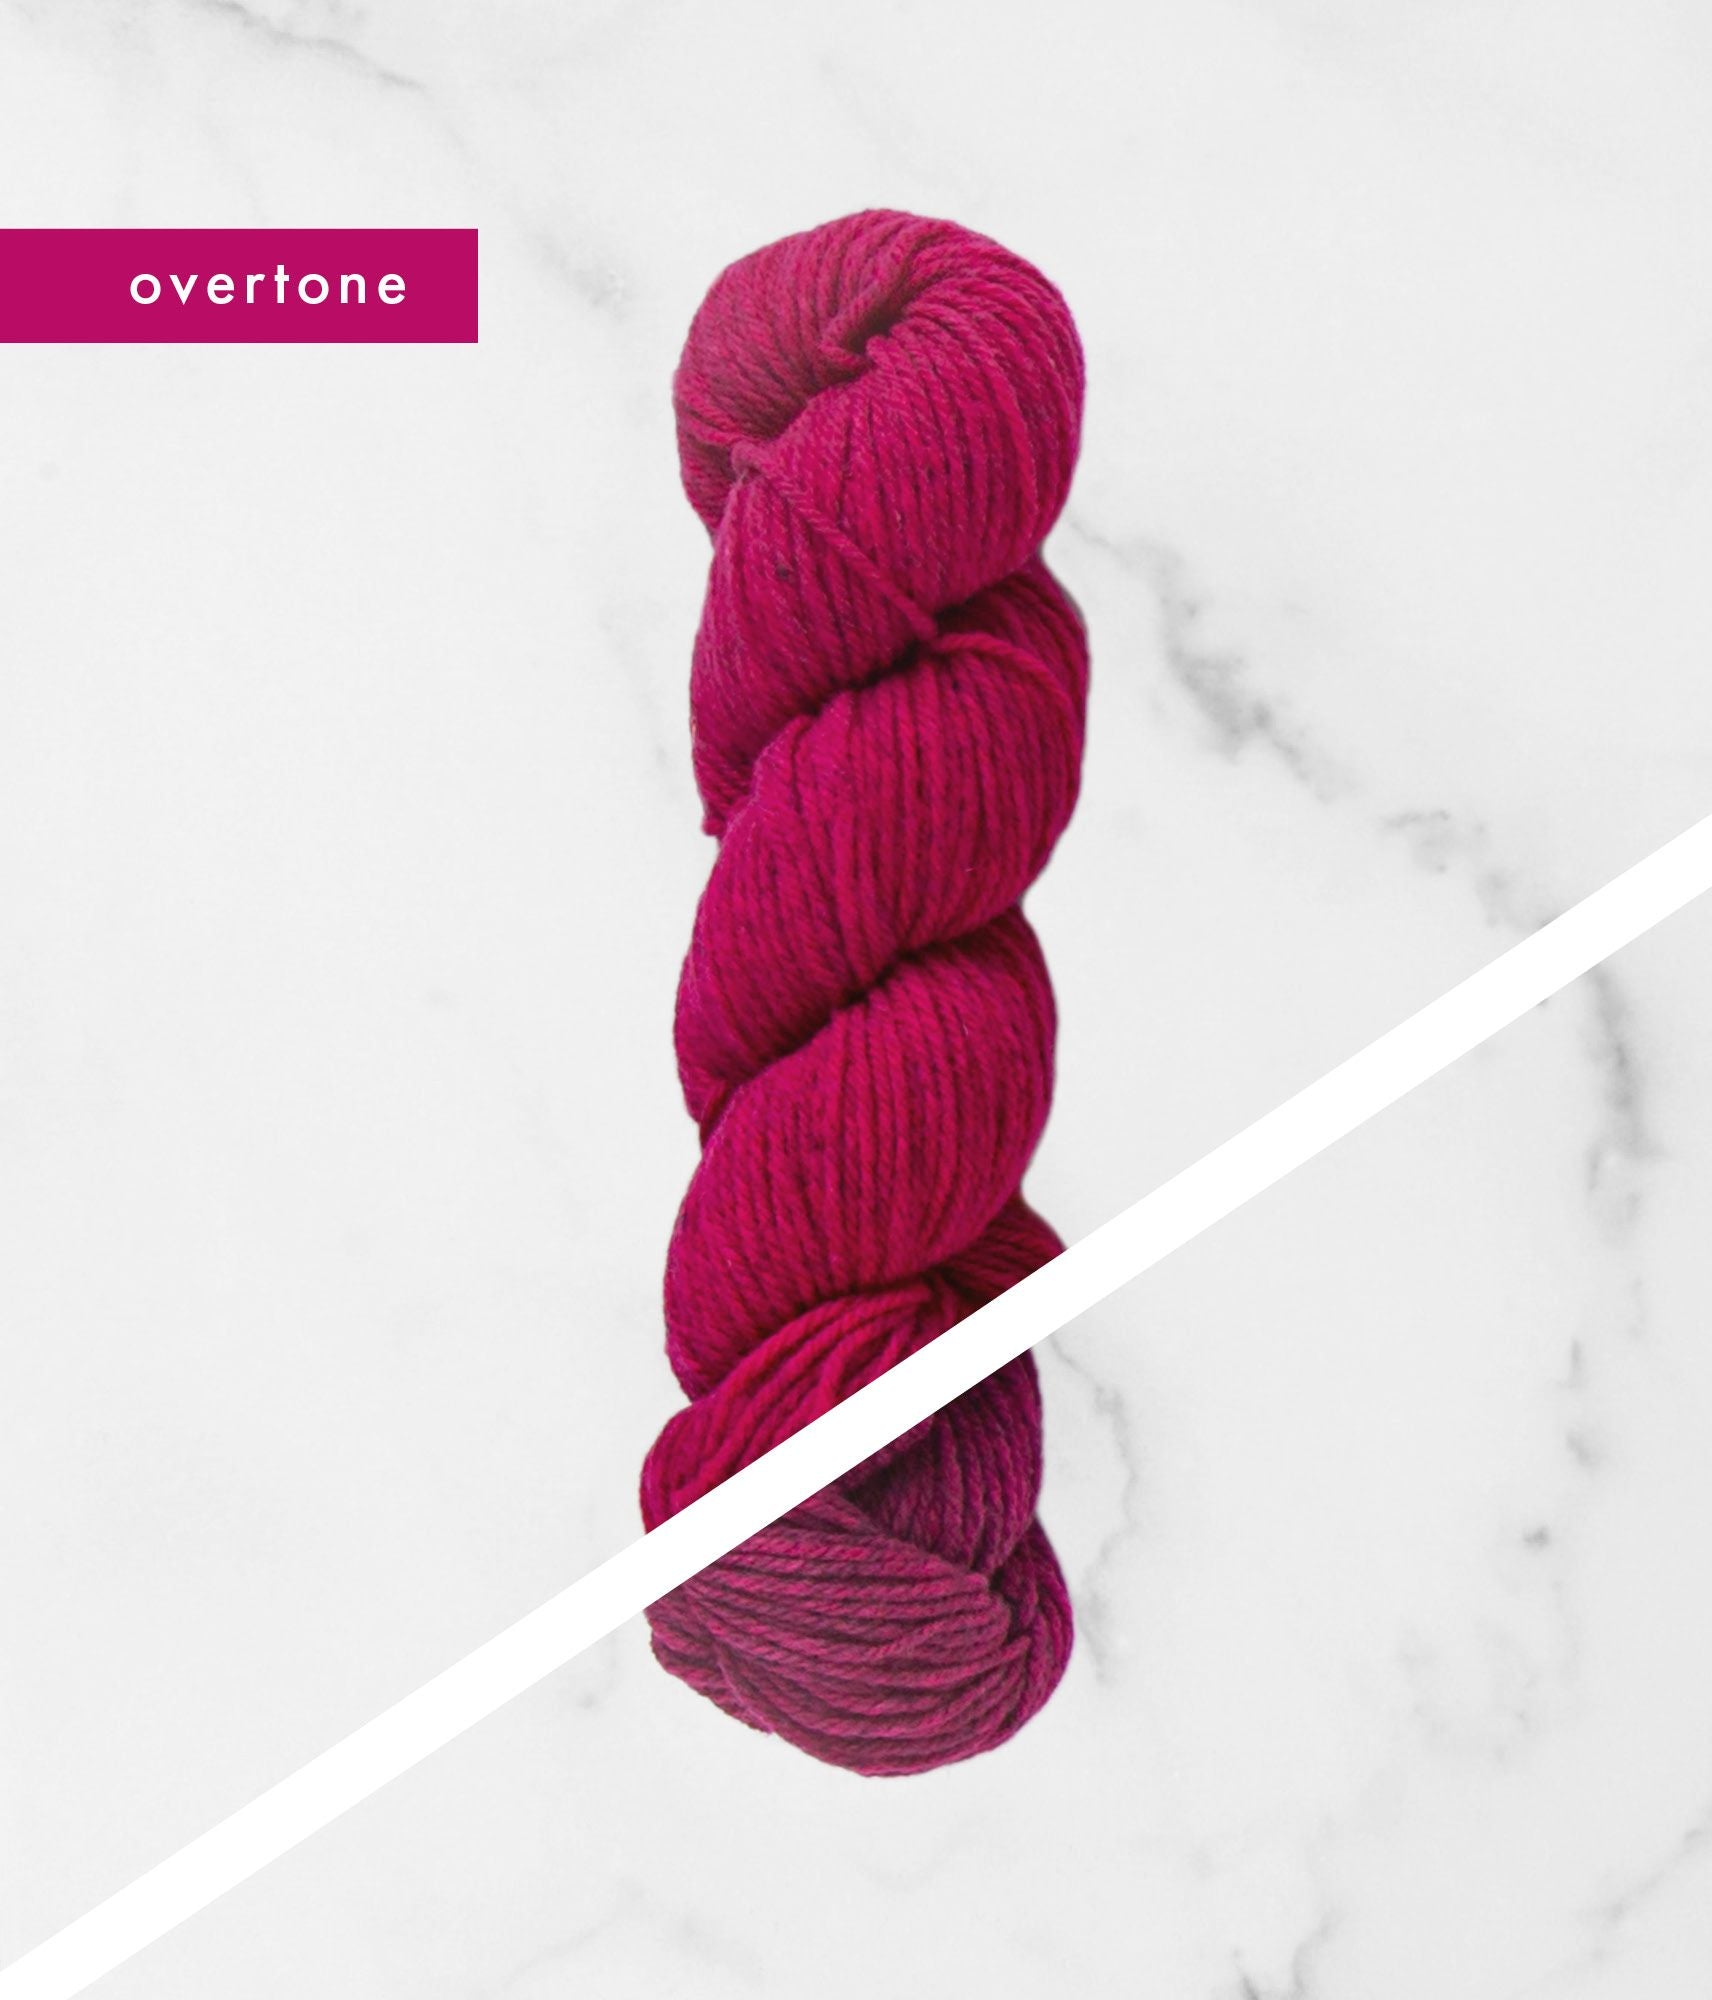 Magenta overtone and undertone BT Tones hanks of yarn